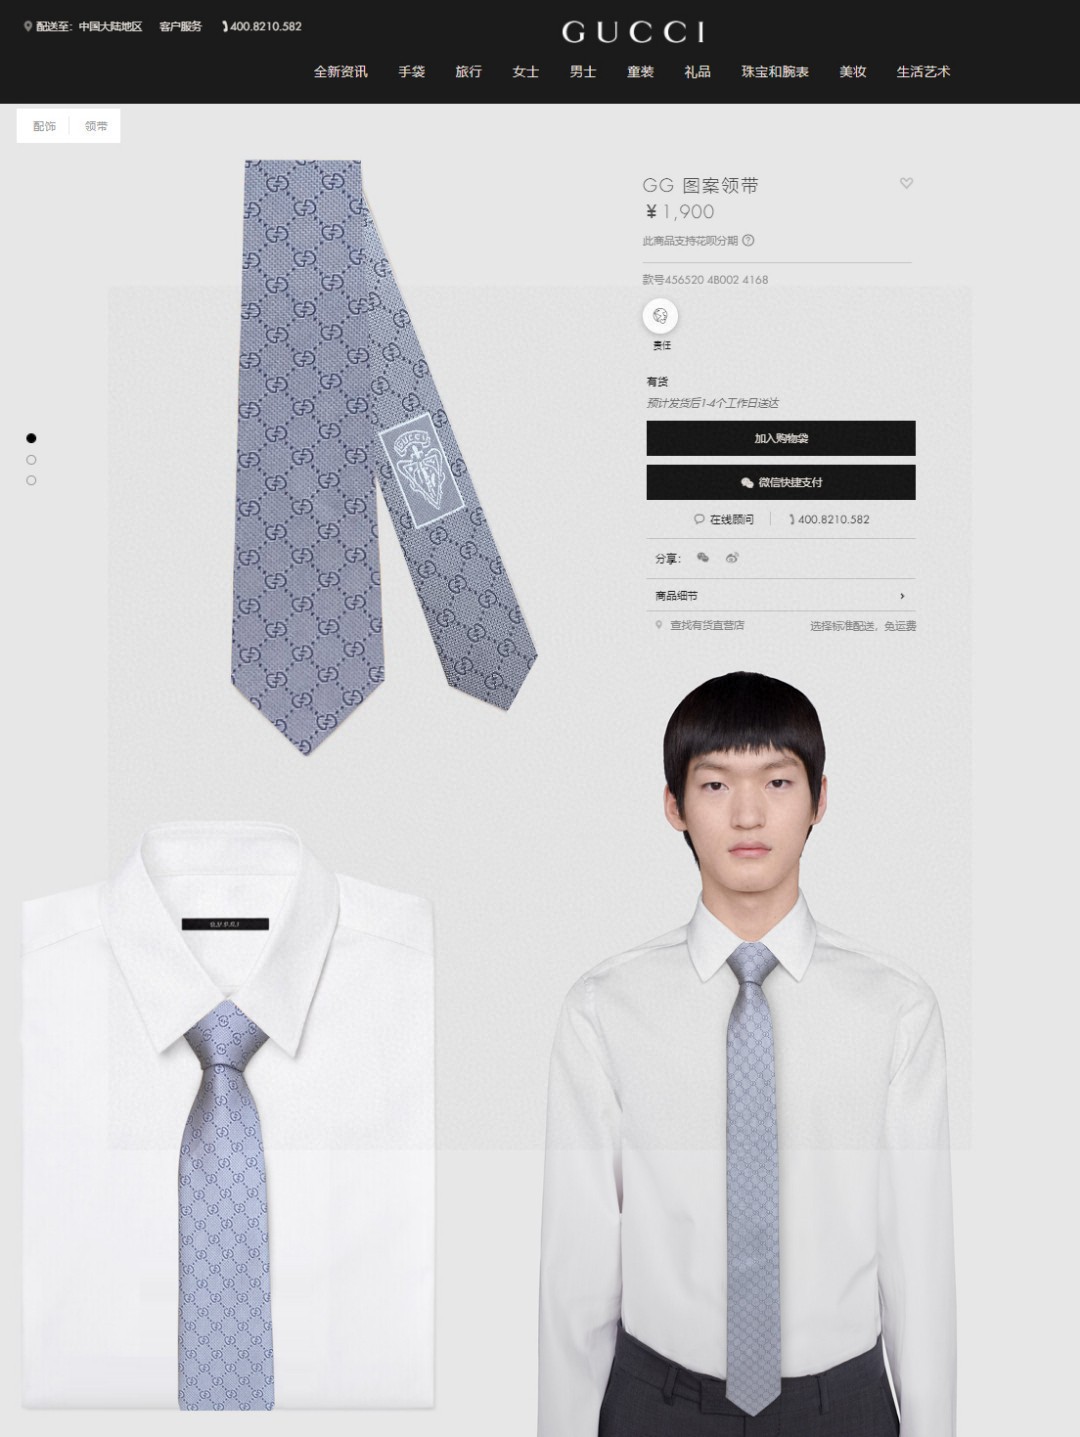 特价G家男士领带系列双G老花真丝领带稀有采用经典小GLOGO提花展现精湛手工与时尚优雅的理想选择这款领带